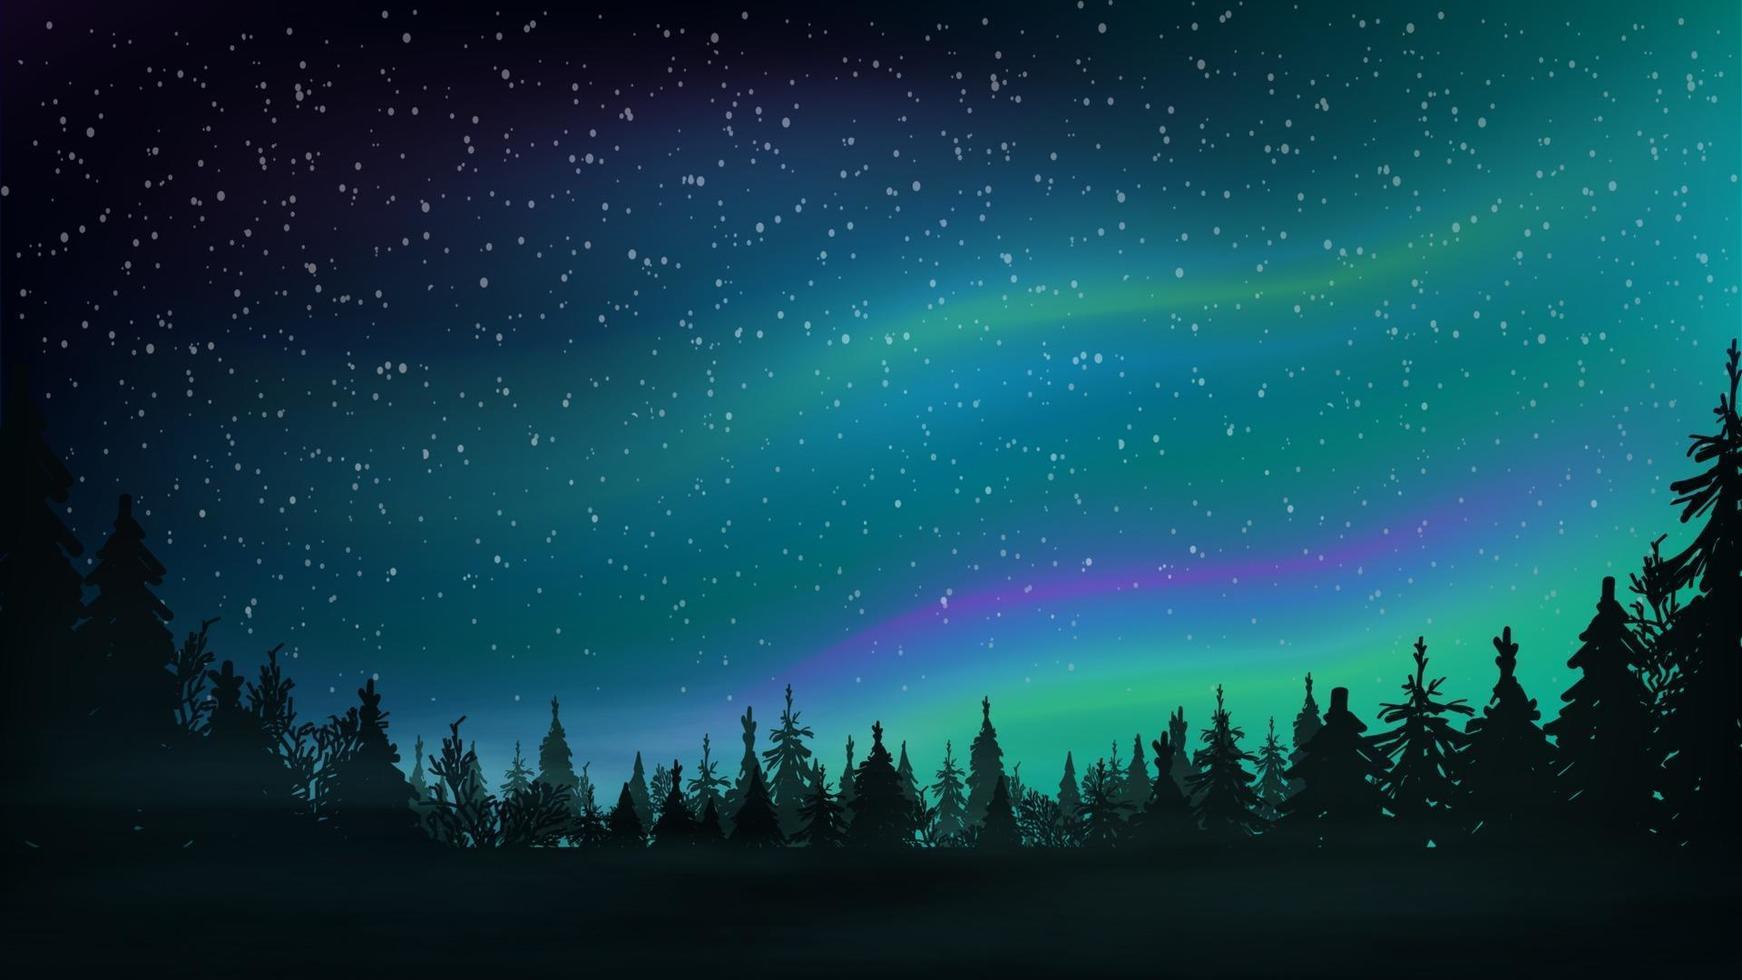 bosque de pinos, cielo estrellado y auroras boreales. paisaje nocturno con hermoso cielo. ilustración vectorial. vector